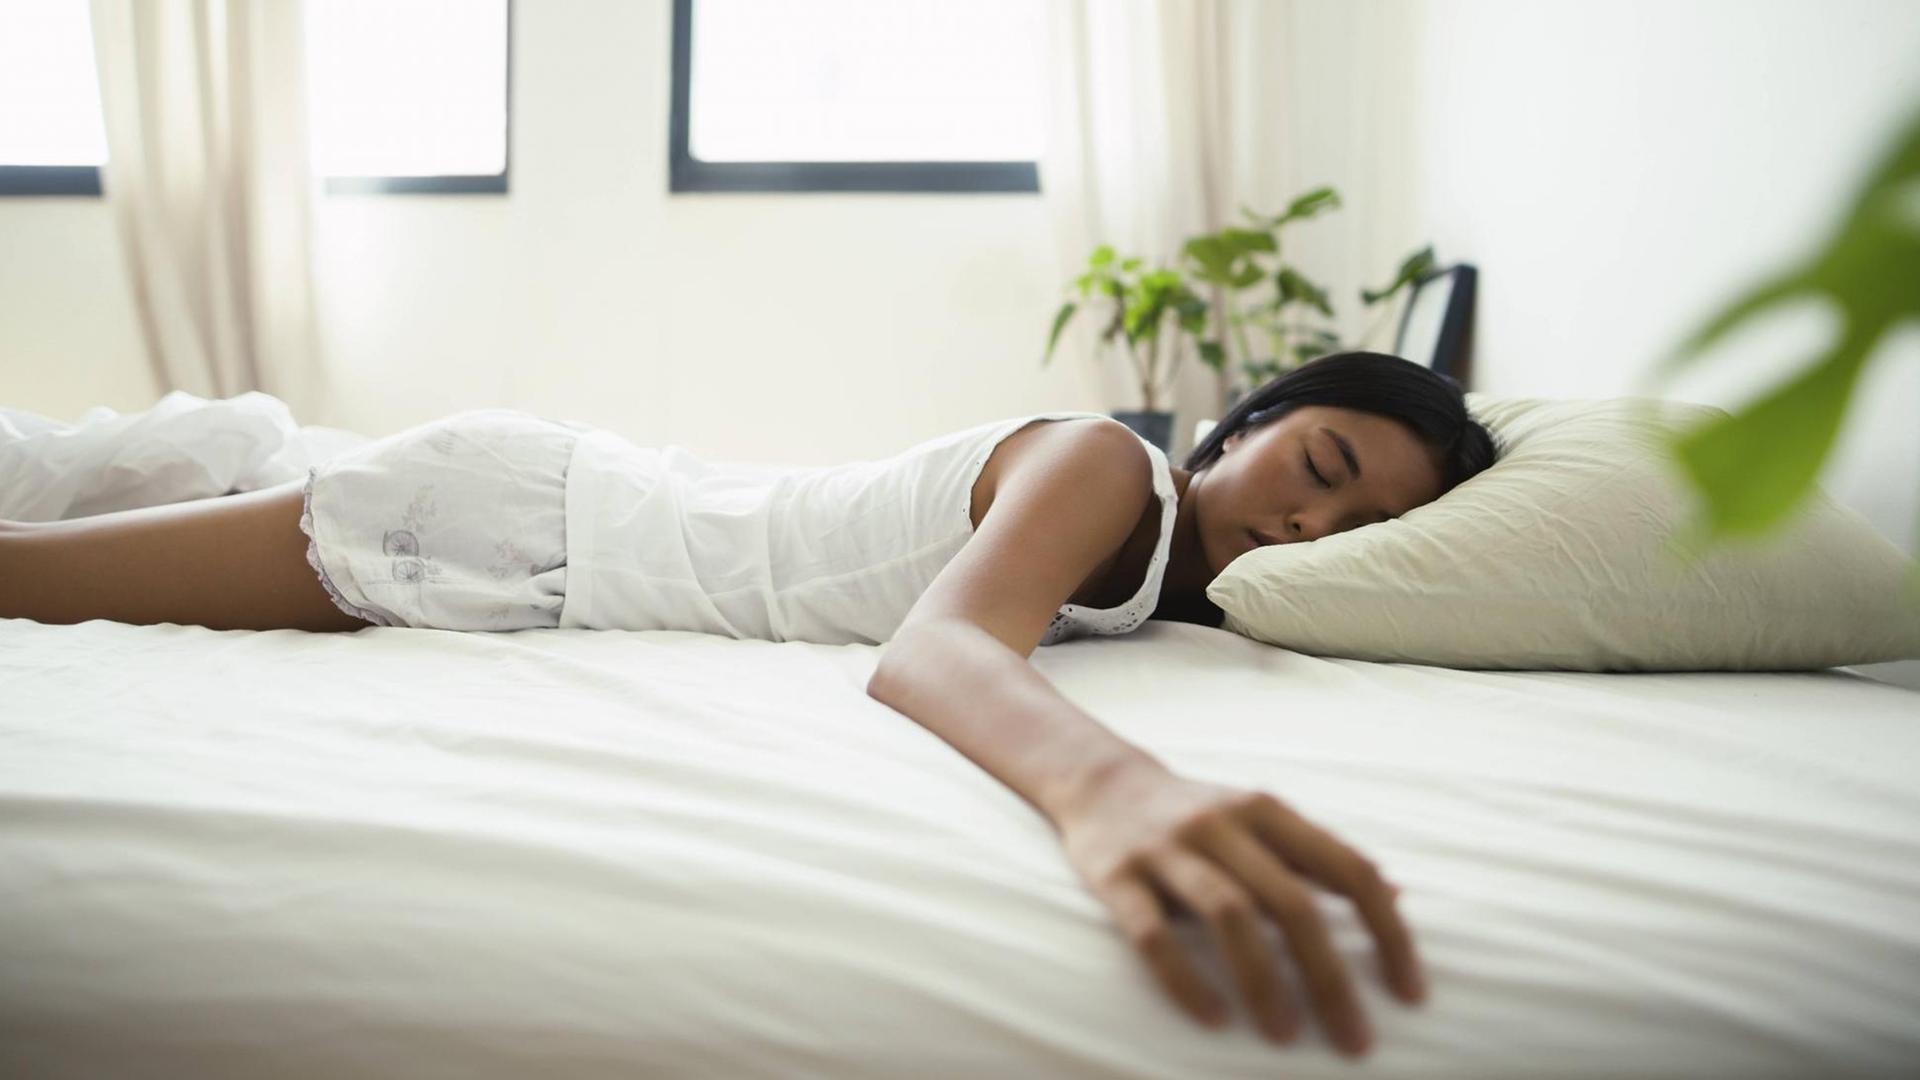 Eine Frau liegt in einem Bett und schläft. Sie liegt dabei auf dem Bauch und streckt einen Arm zur Seite aus.